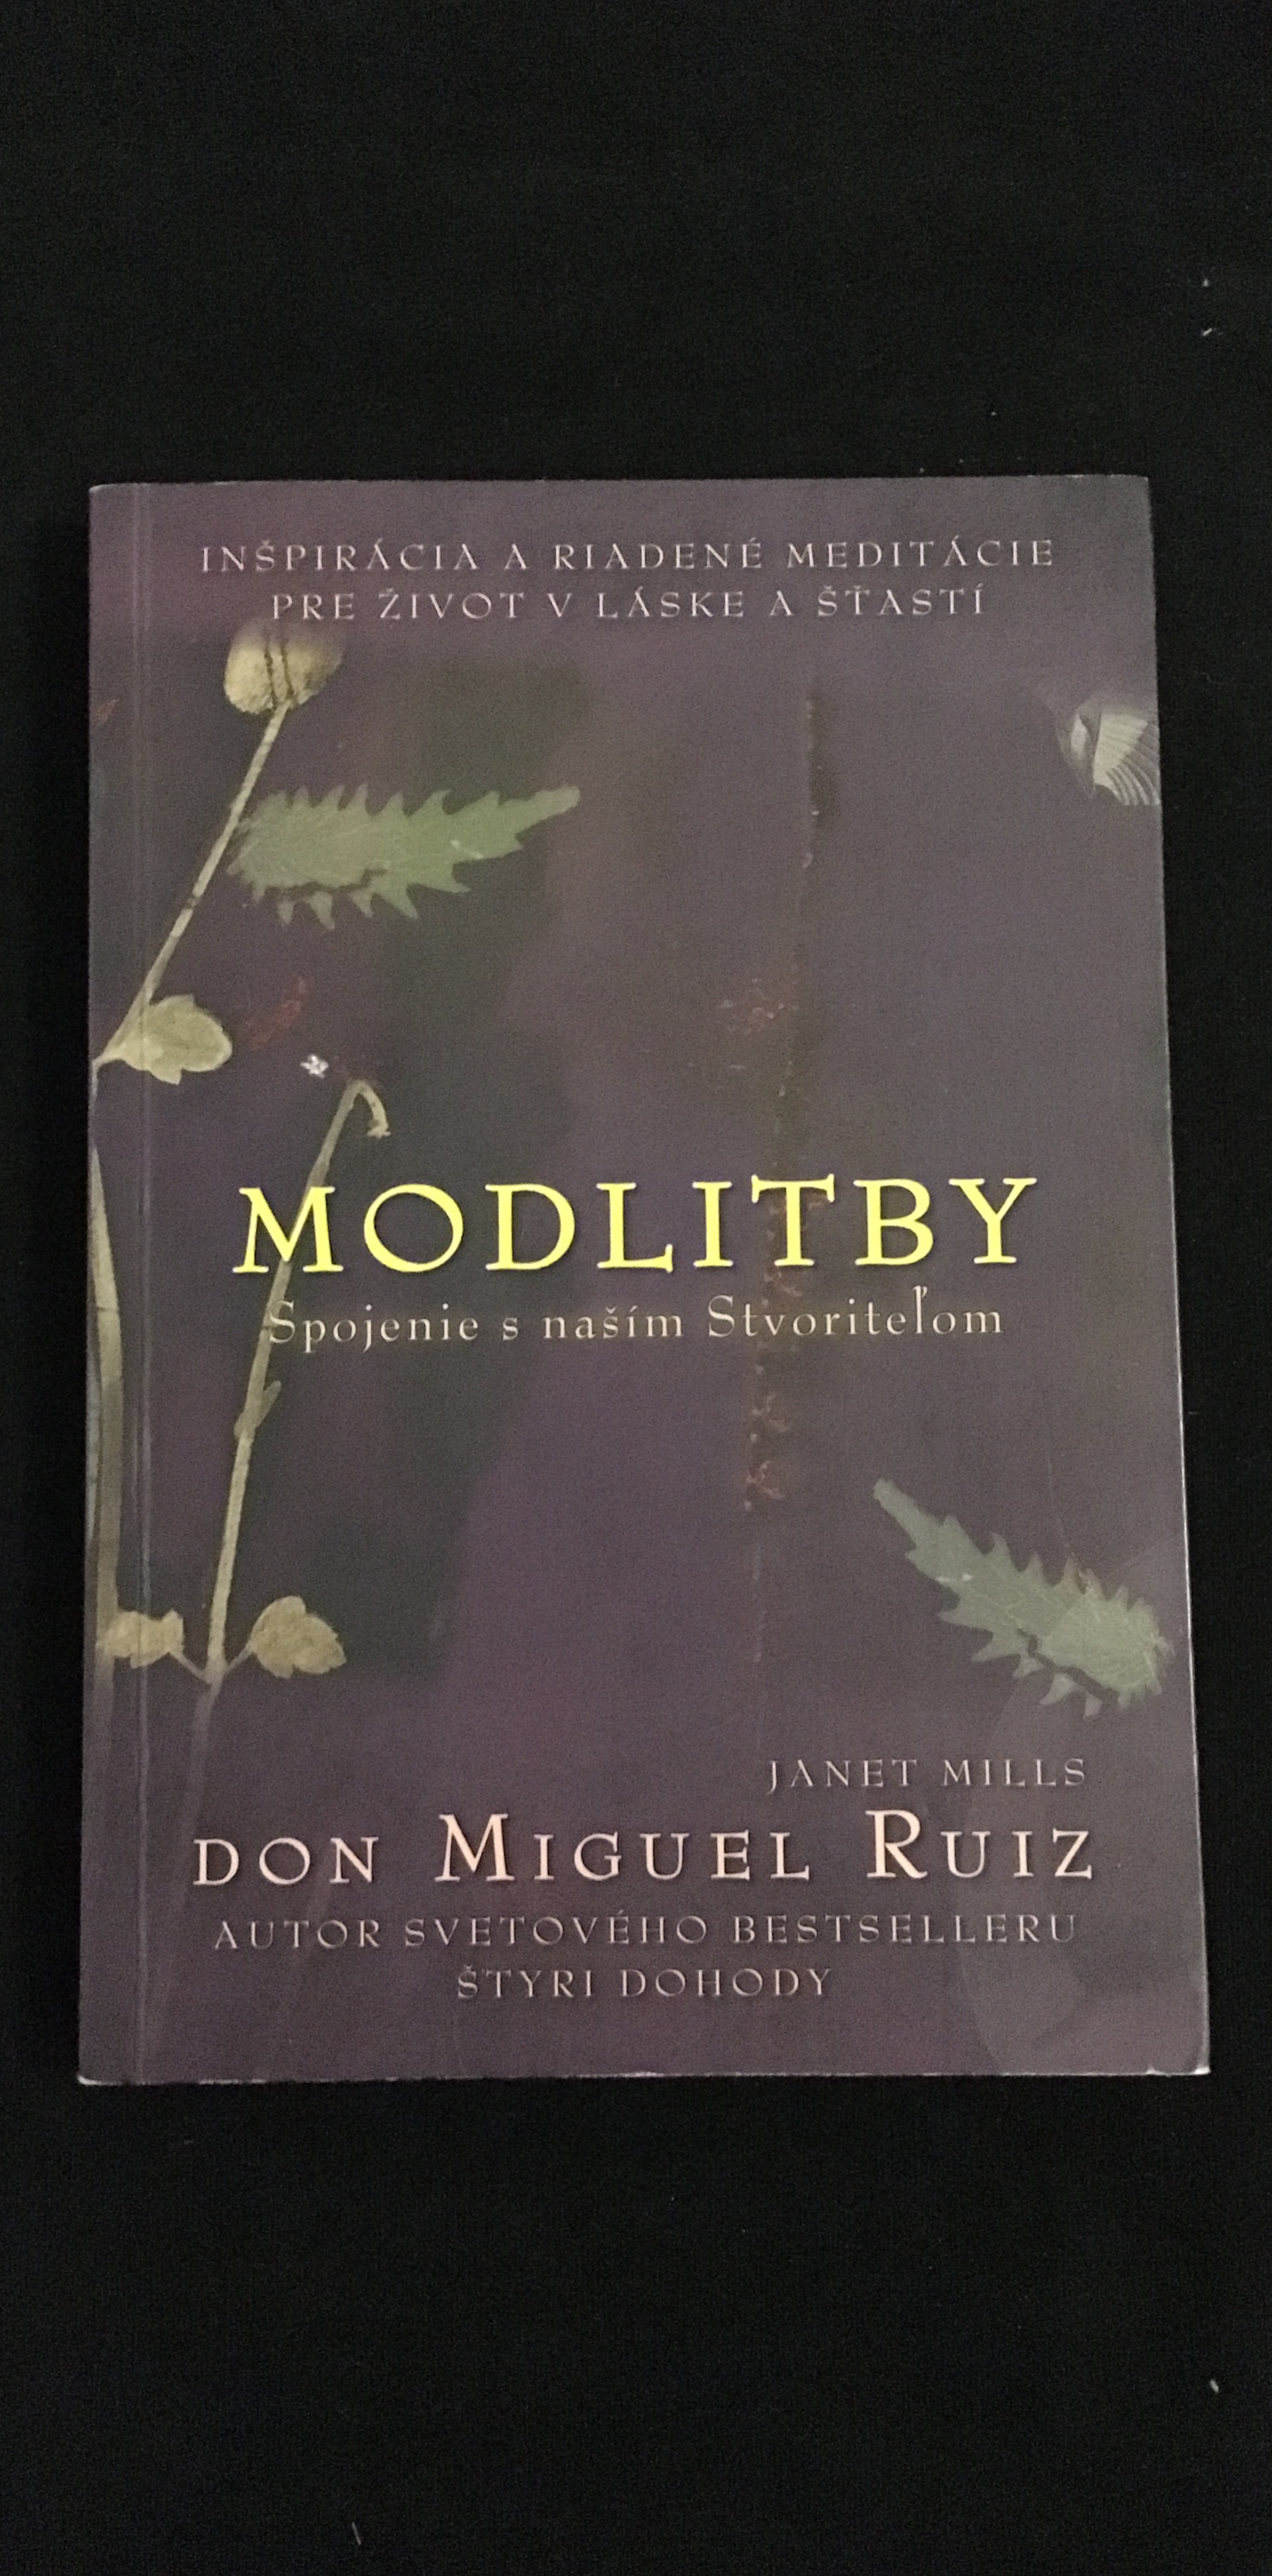 Don Miguel Ruiz-Modlitby